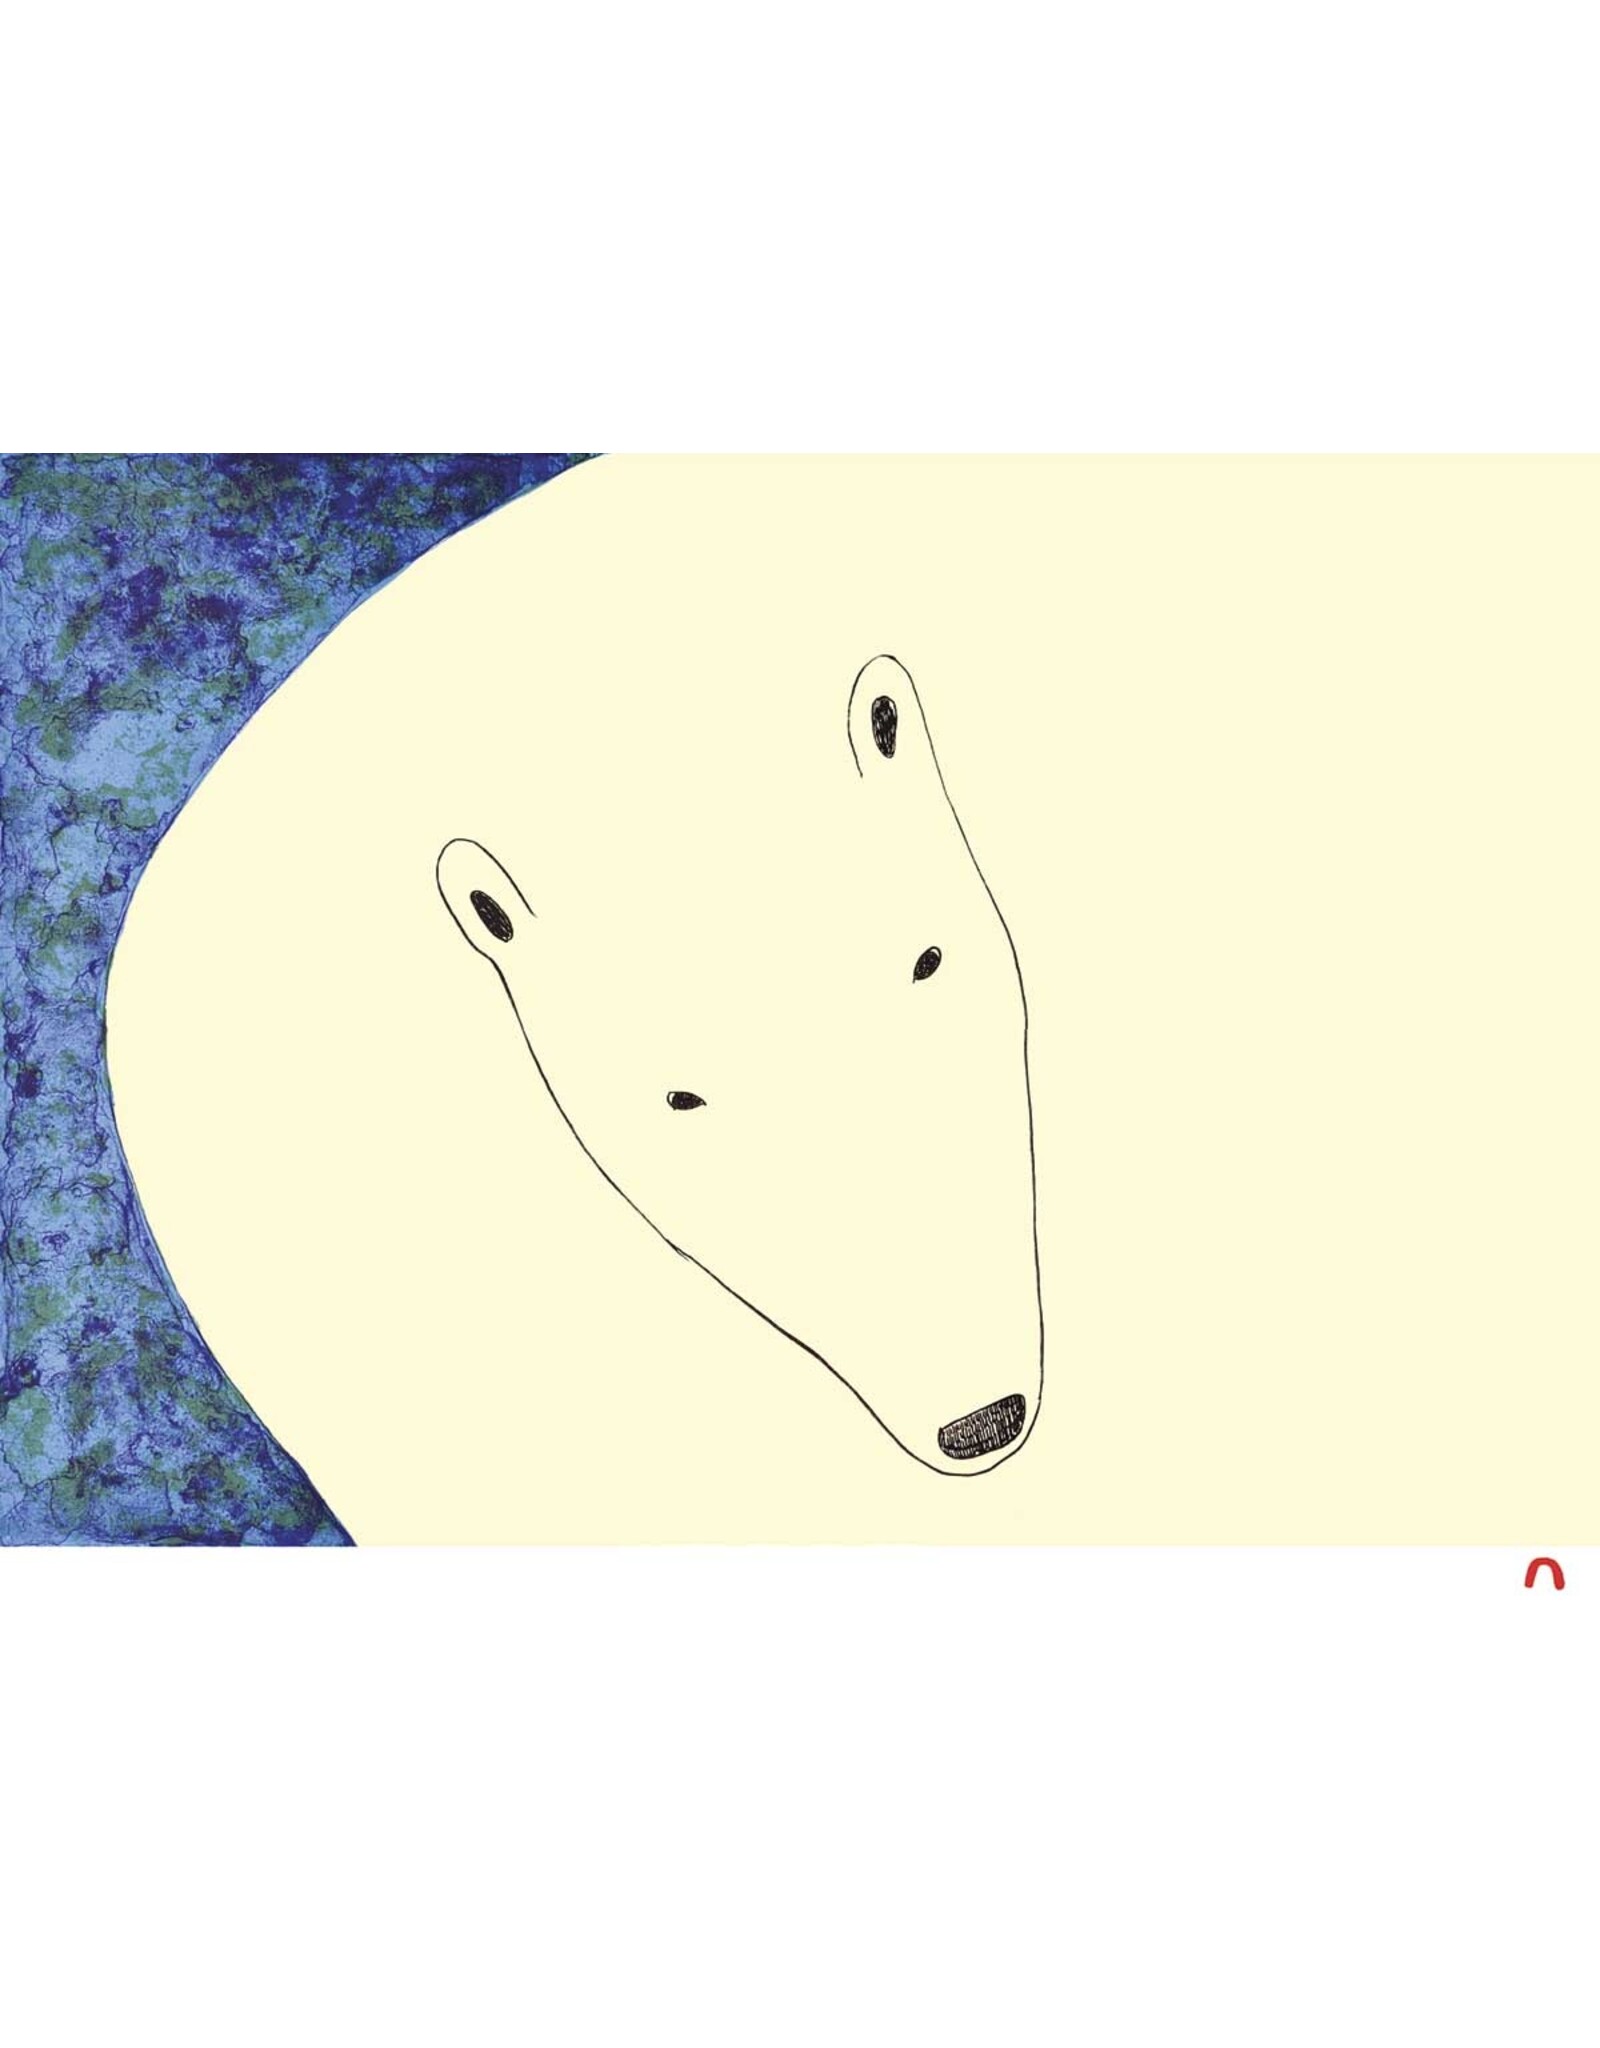 Curious Bear par Ningeokuluk Teevee Montée sur Passe-Partout